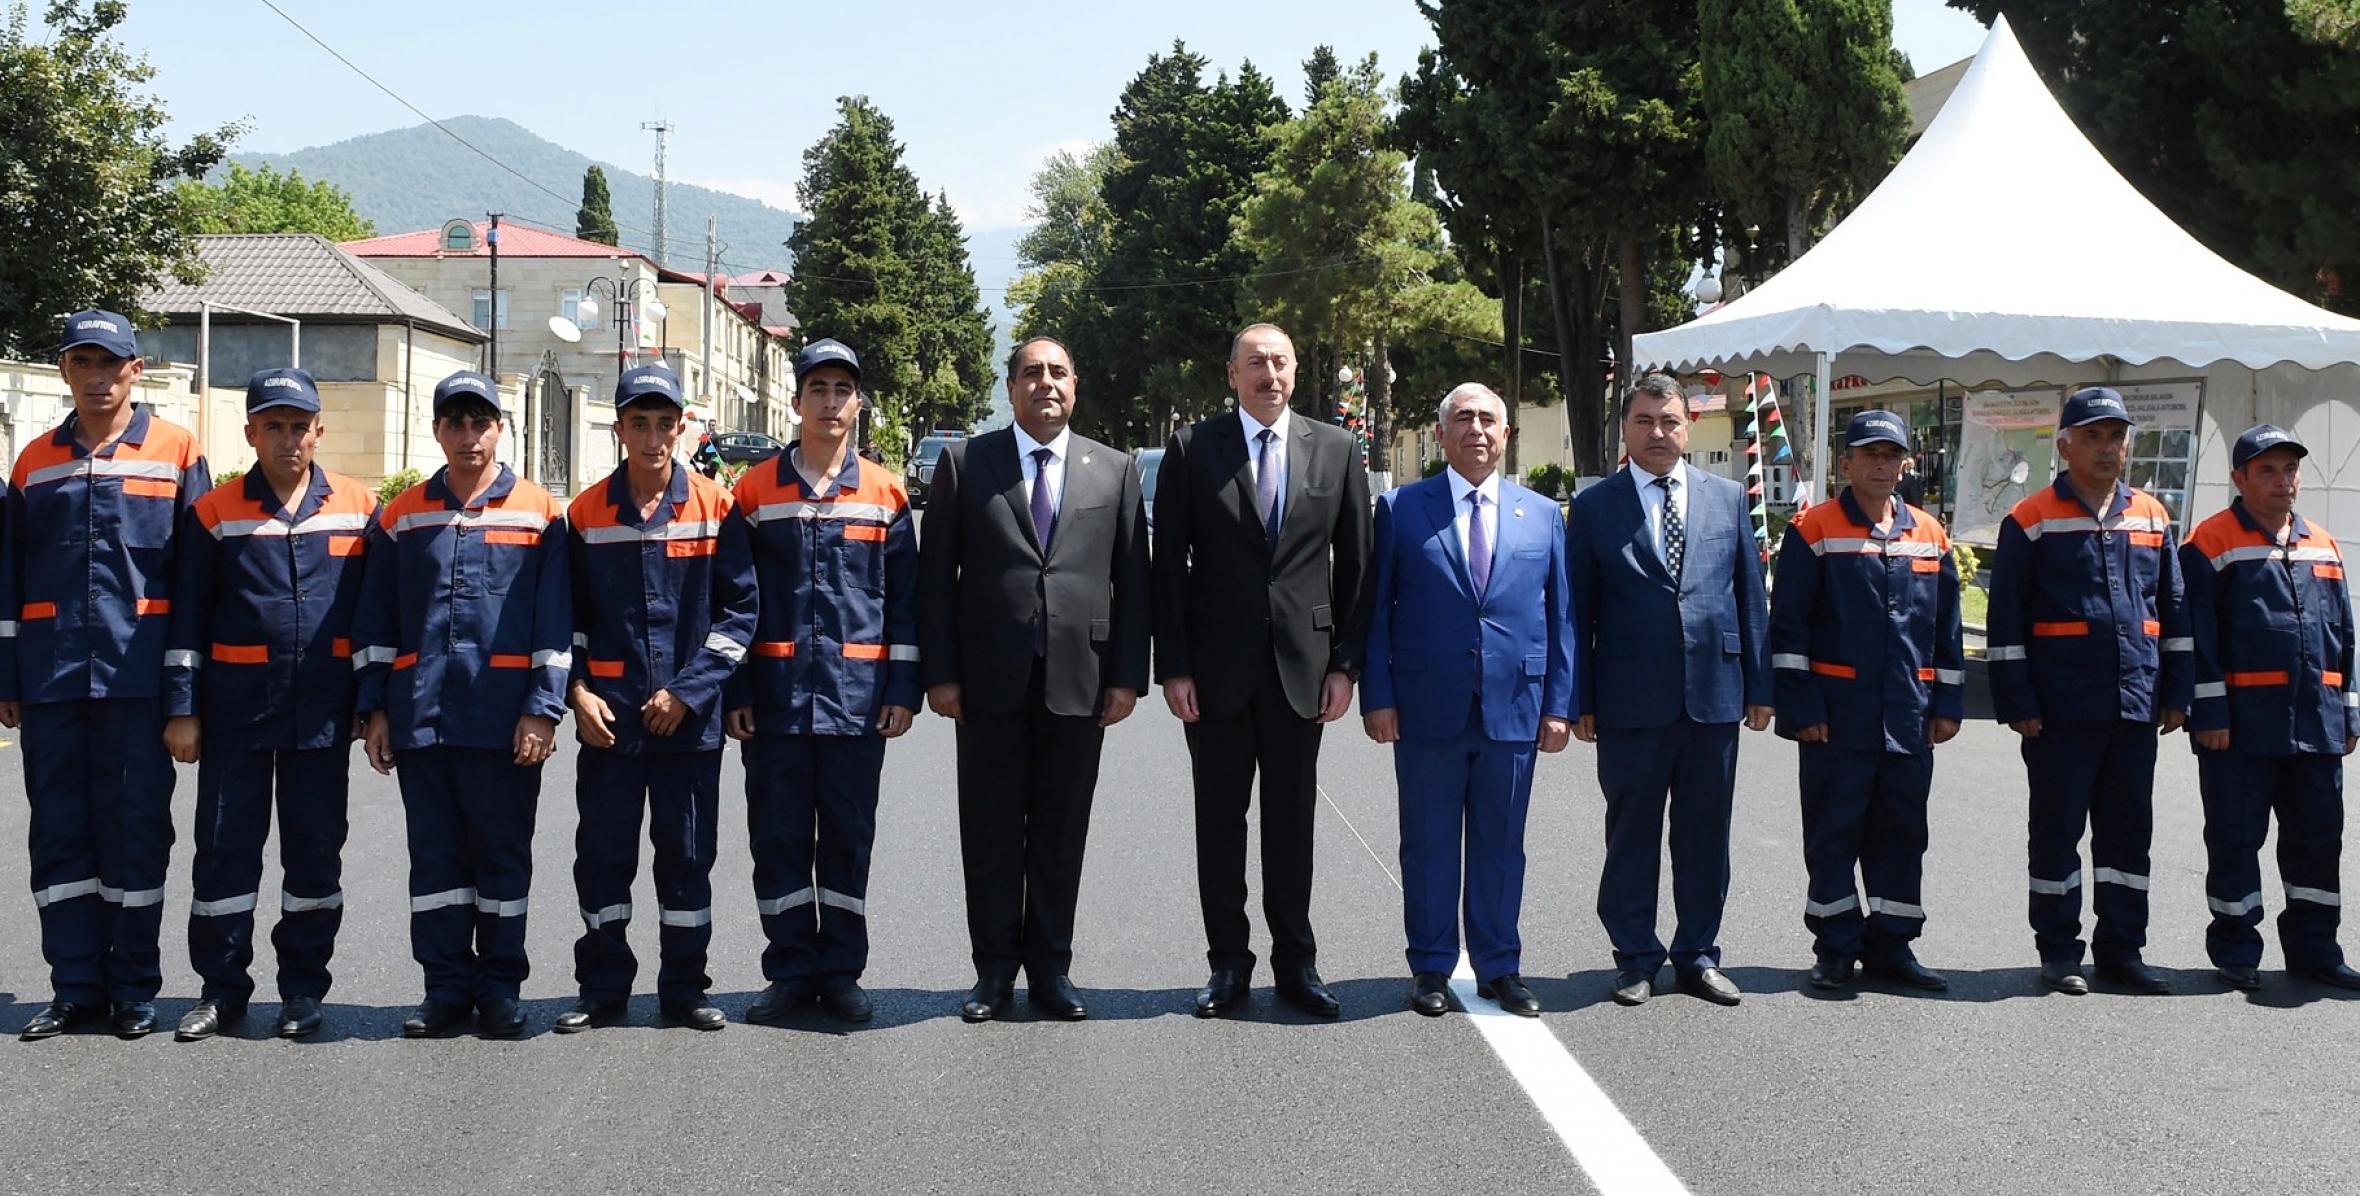 İlham Əliyev Balakən-Sarıbulaq-Qabaqçöl-Xalatala avtomobil yolunun açılışında iştirak edib